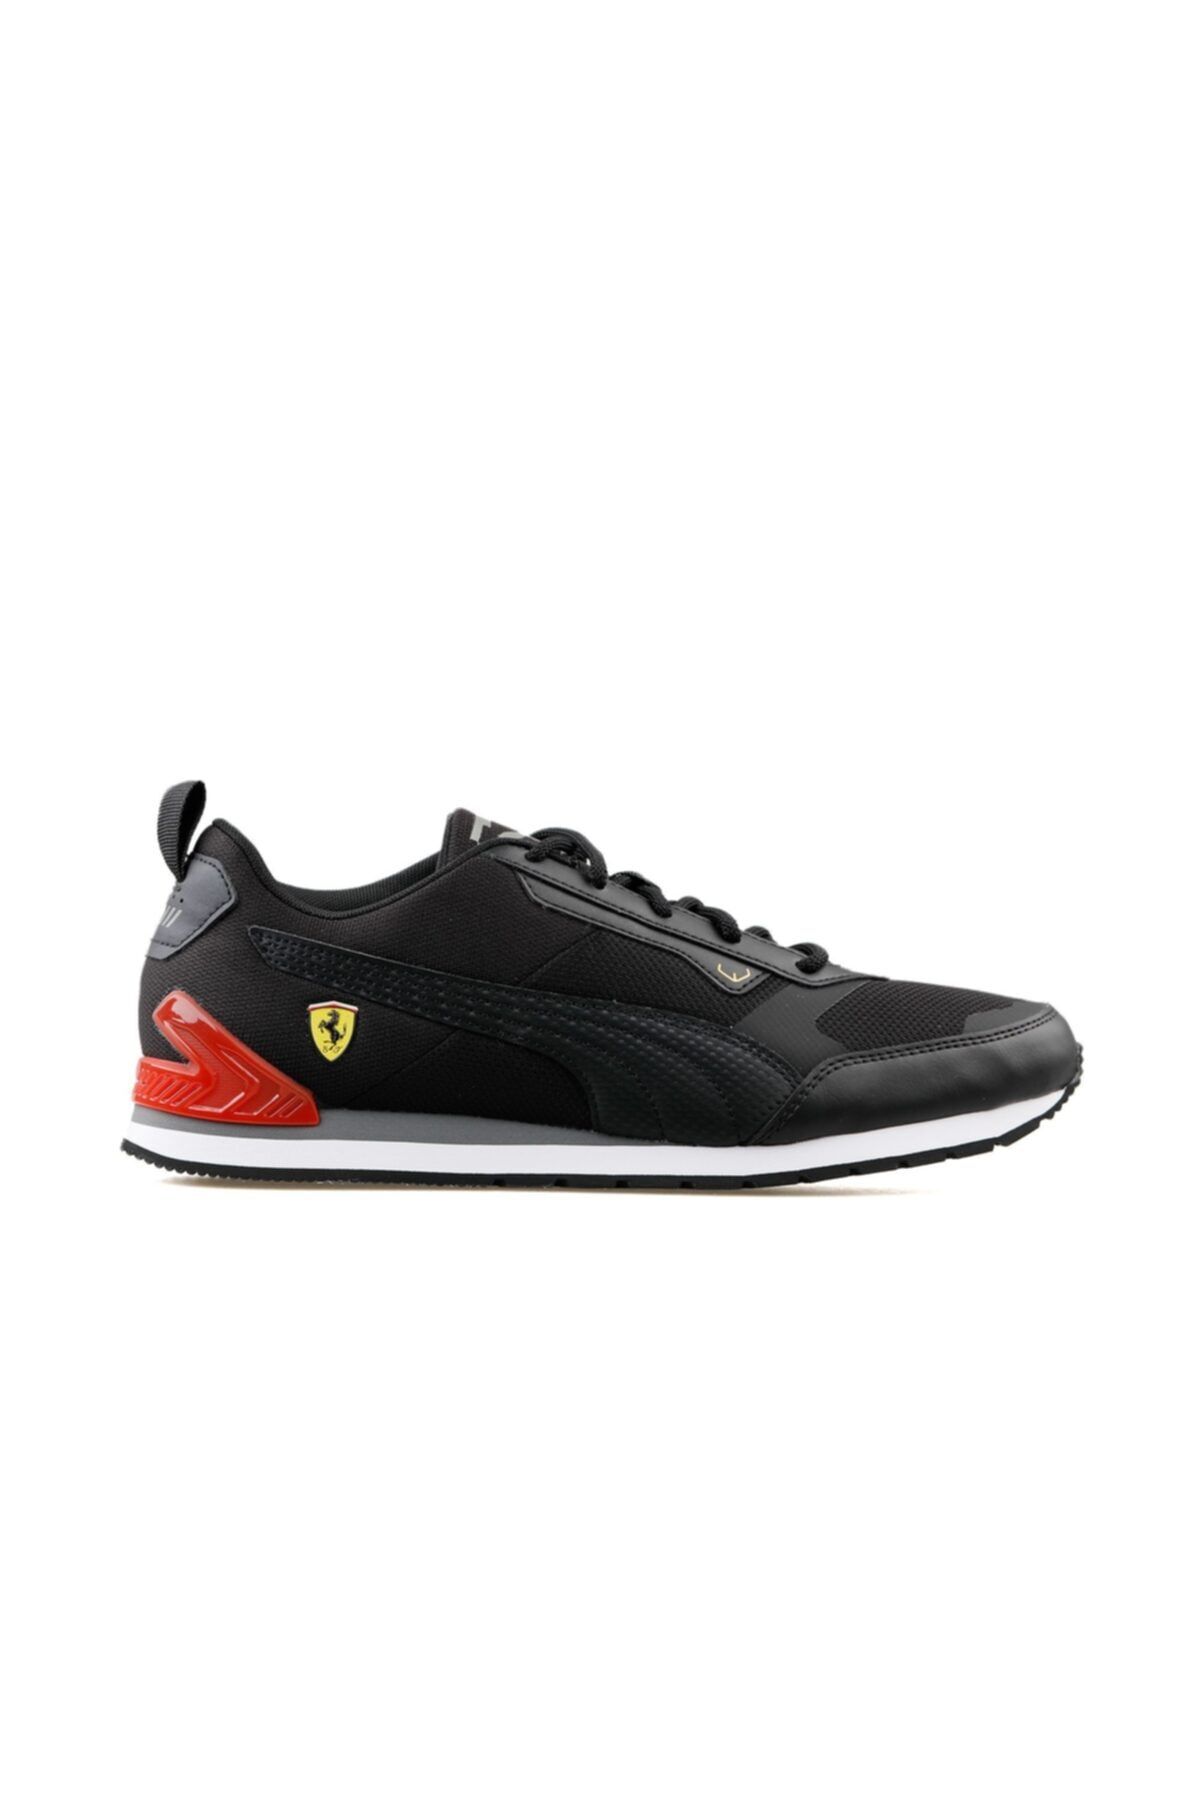 Puma Ferrari Track Racer Erkek Günlük Ayakkabı 30685801 Siyah